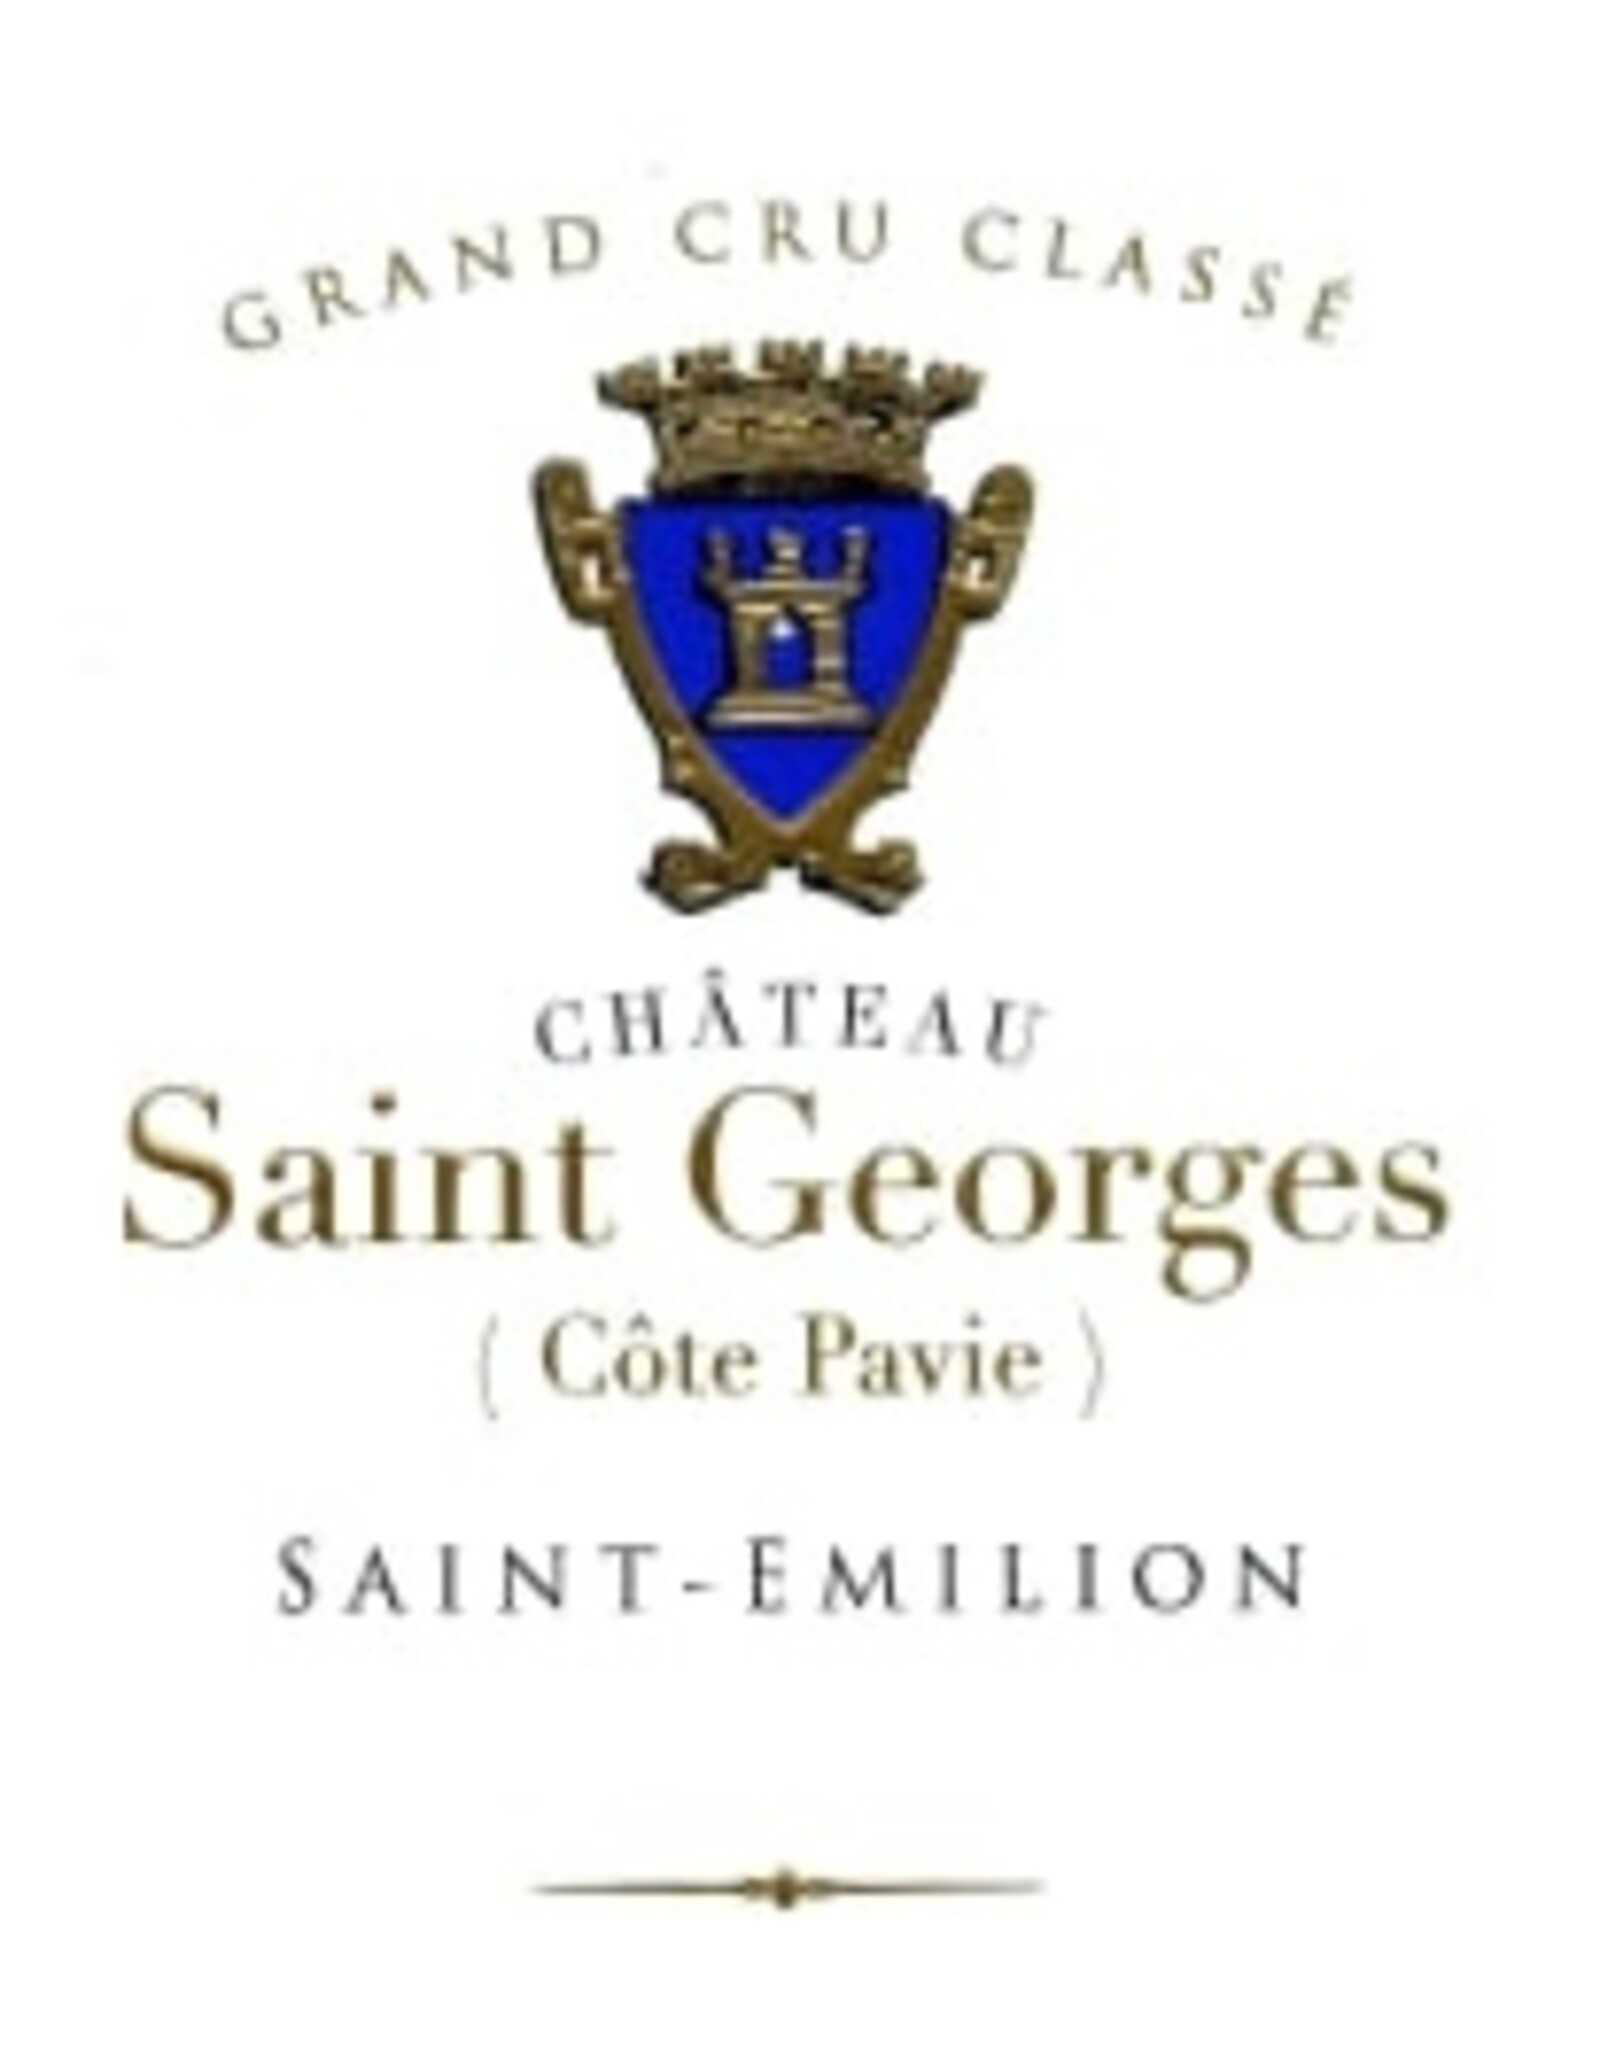 Château Saint Georges Côte Pavie 2018 - St- Émilion